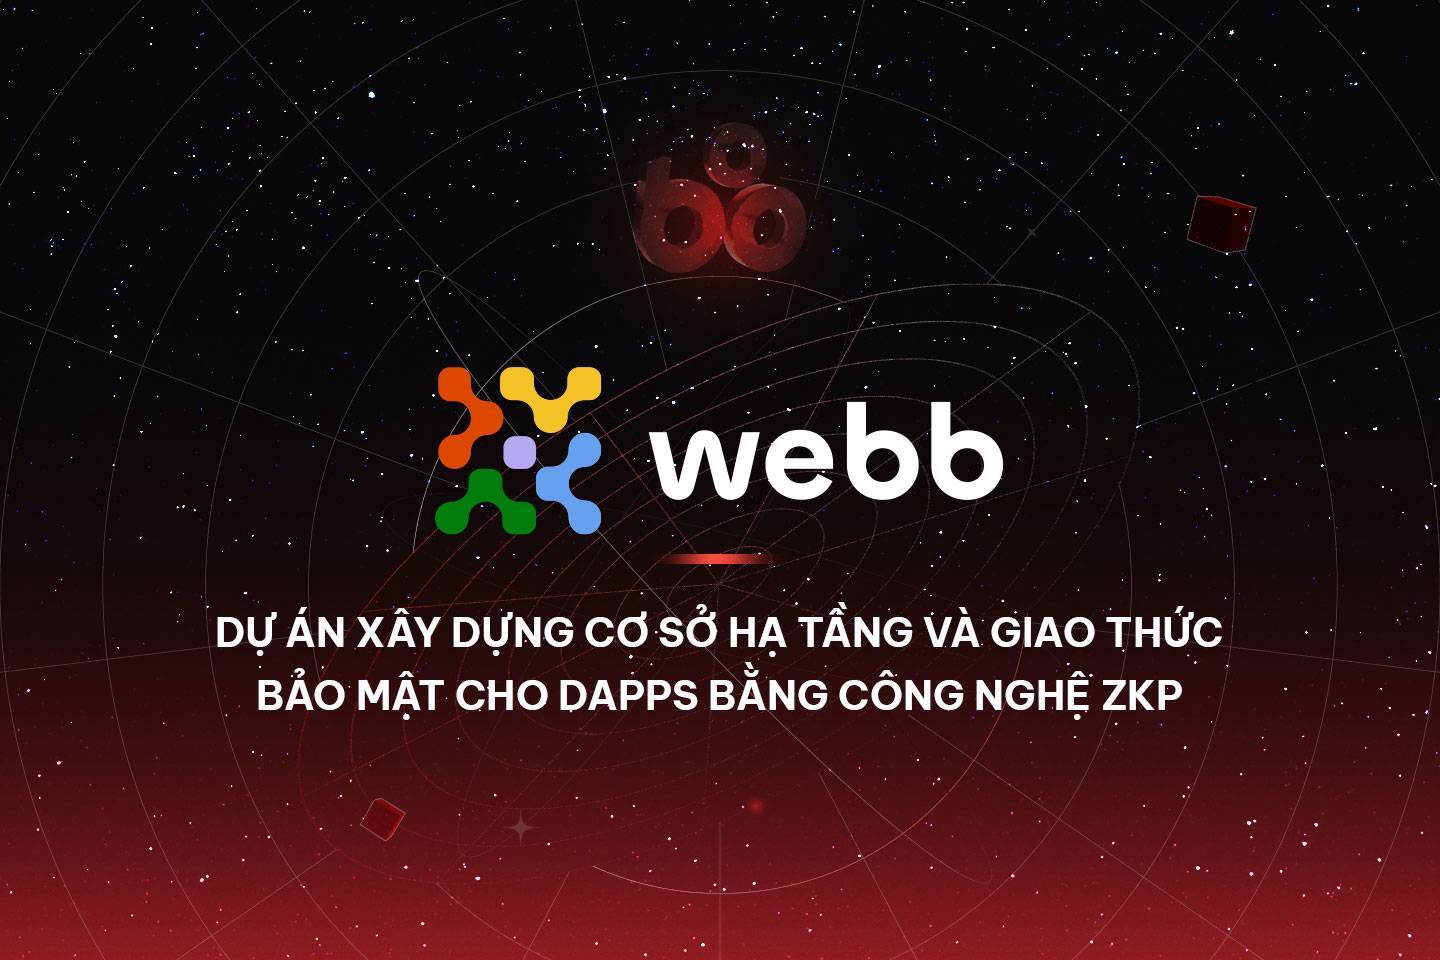 Webb - Dự Án Xây Dựng Cơ Sở Hạ Tầng Và Giao Thức Bảo Mật Cho Dapps Bằng Công Nghệ Zkp